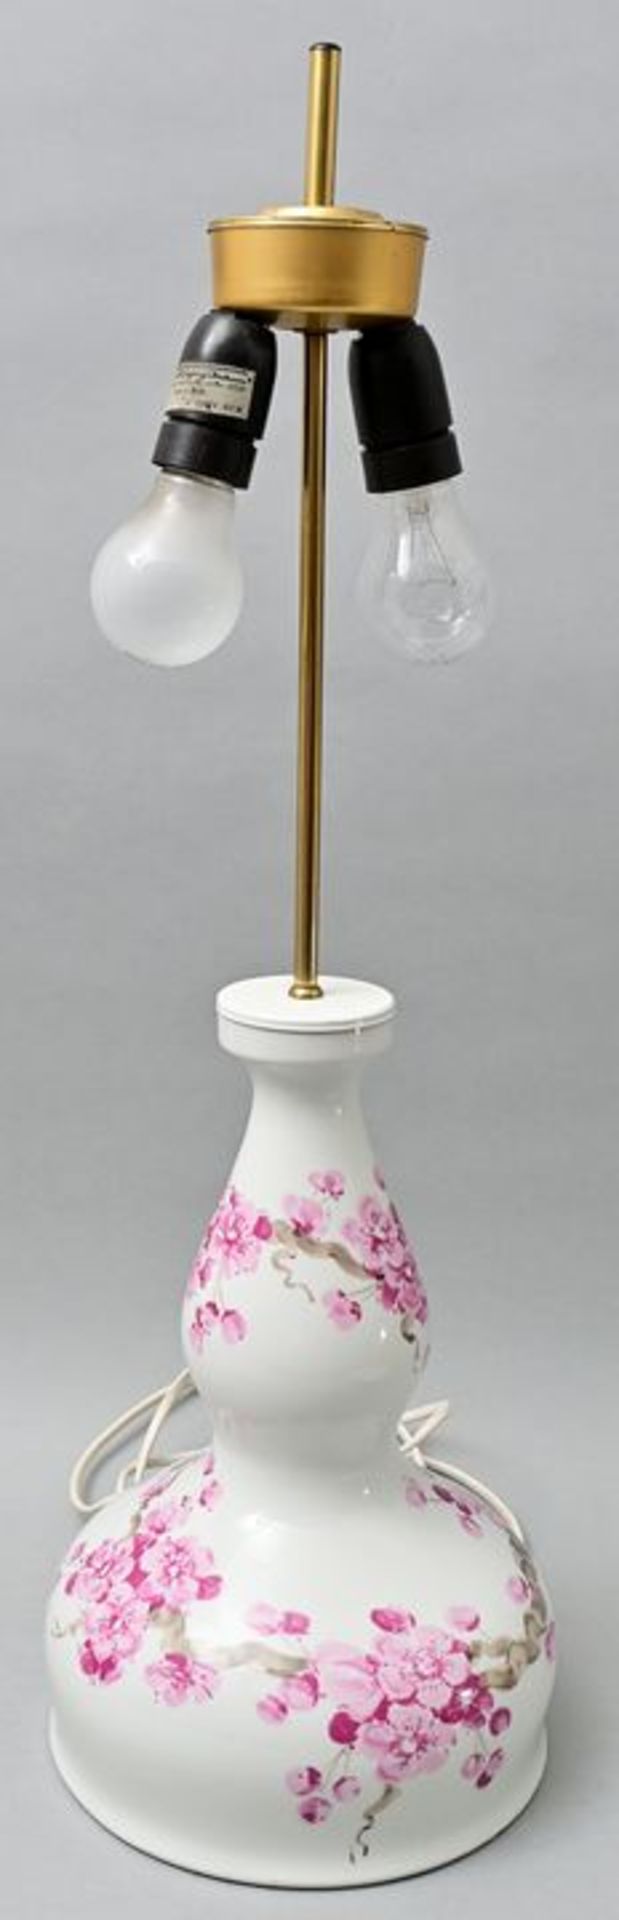 Lampe/ lamp